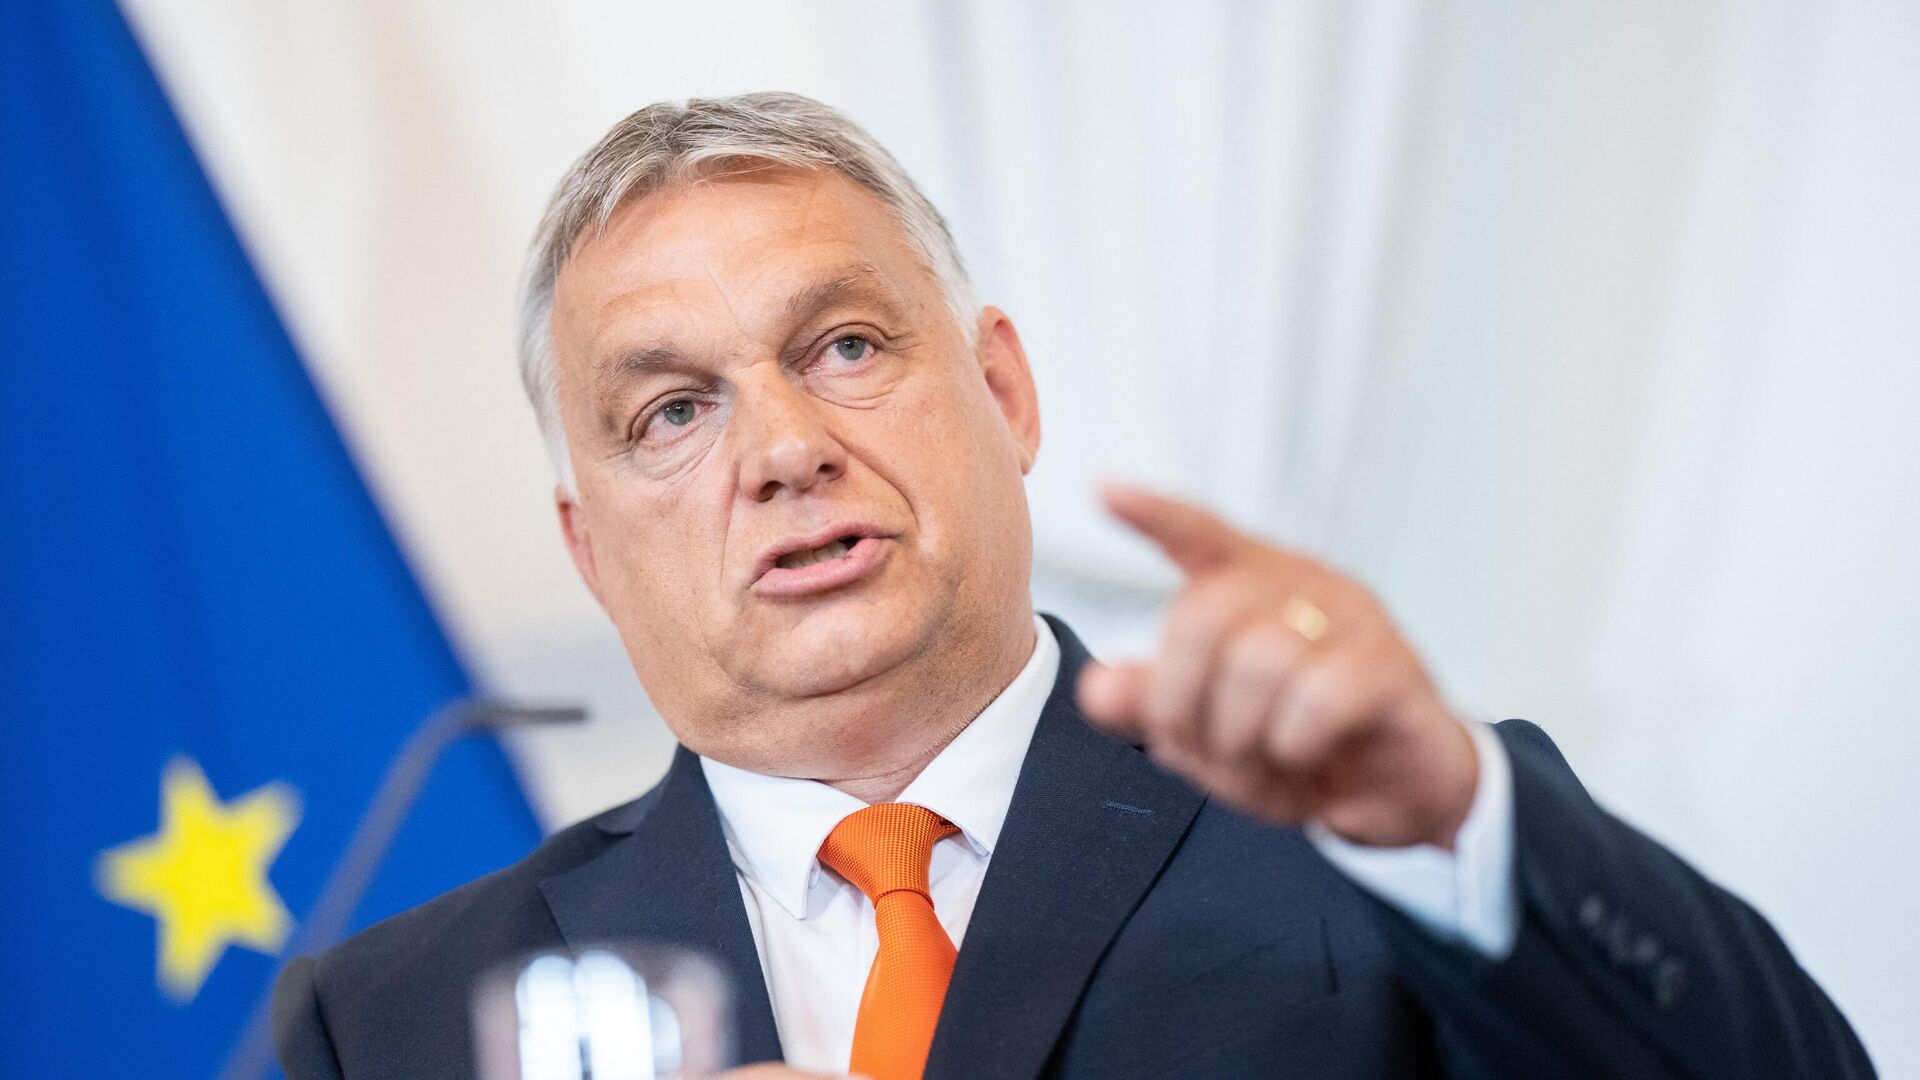 优享资讯 | 欧尔班称欧洲议会指控匈牙利民主倒退是无聊的笑话